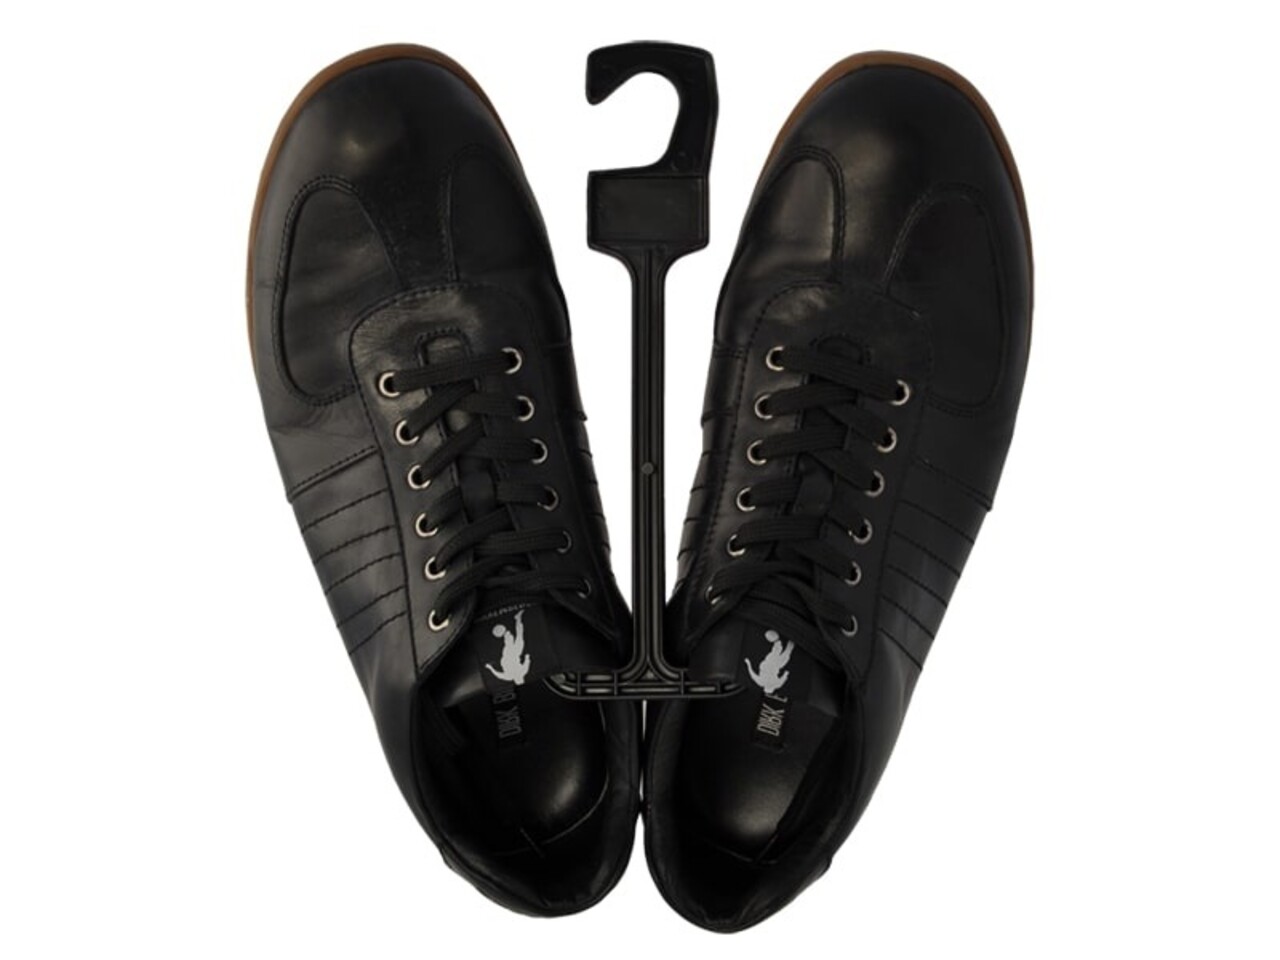 Schuhbügel Kunststoff schwarz - Der Kleiderbügelriese